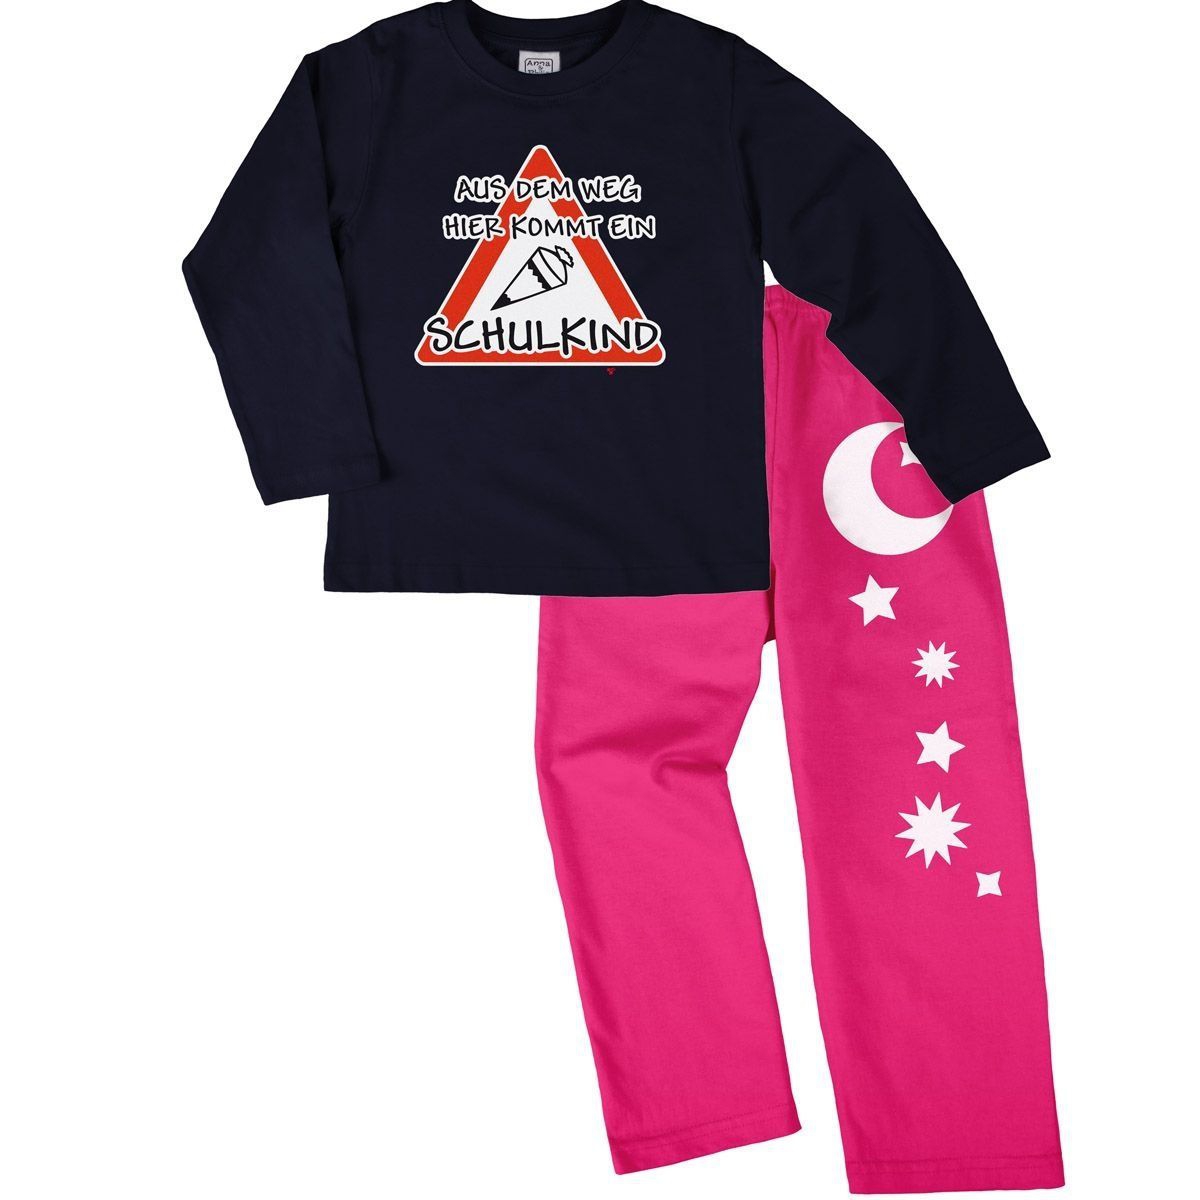 Kommt ein Schulkind Pyjama Set navy / pink 122 / 128